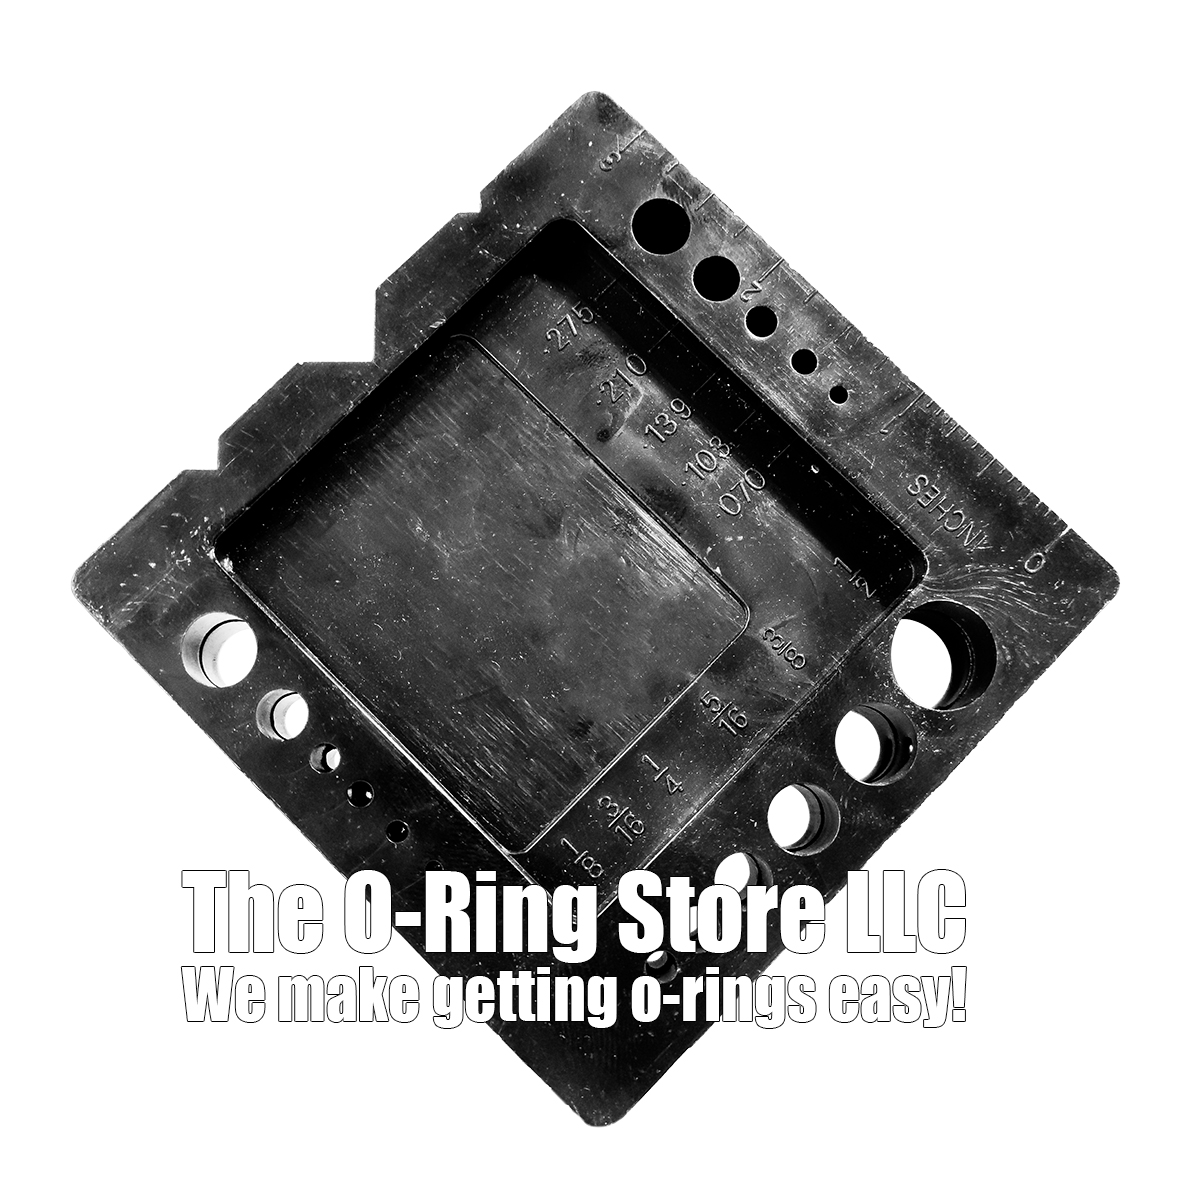 Deluxe Plastic O-Ring Splice Jig